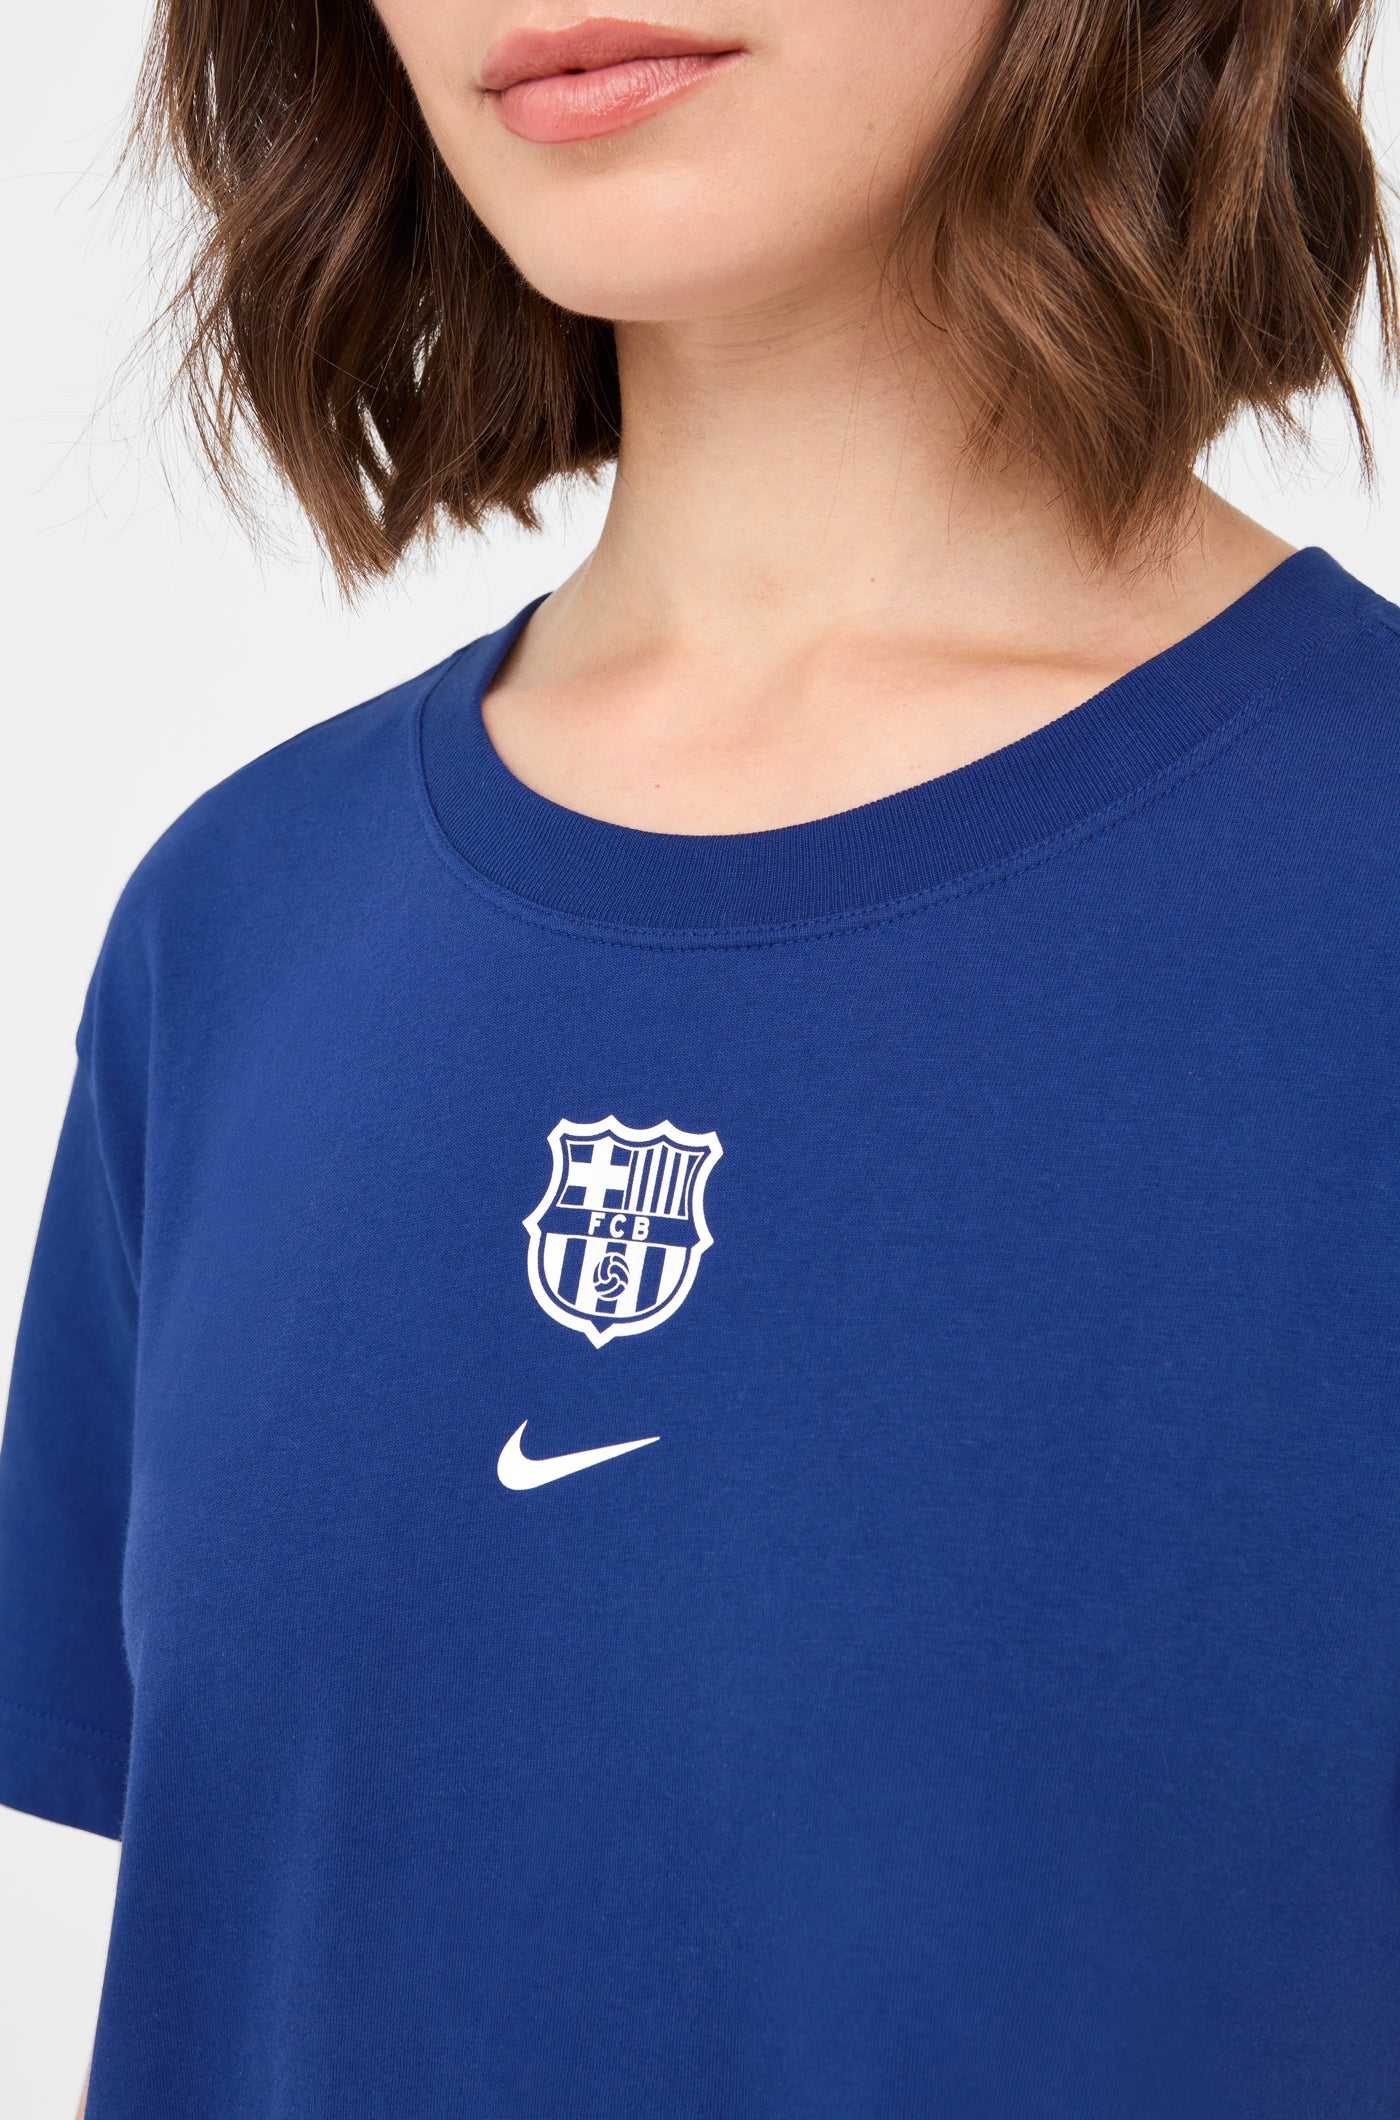 Crop top blava escut Barça Nike - Dona